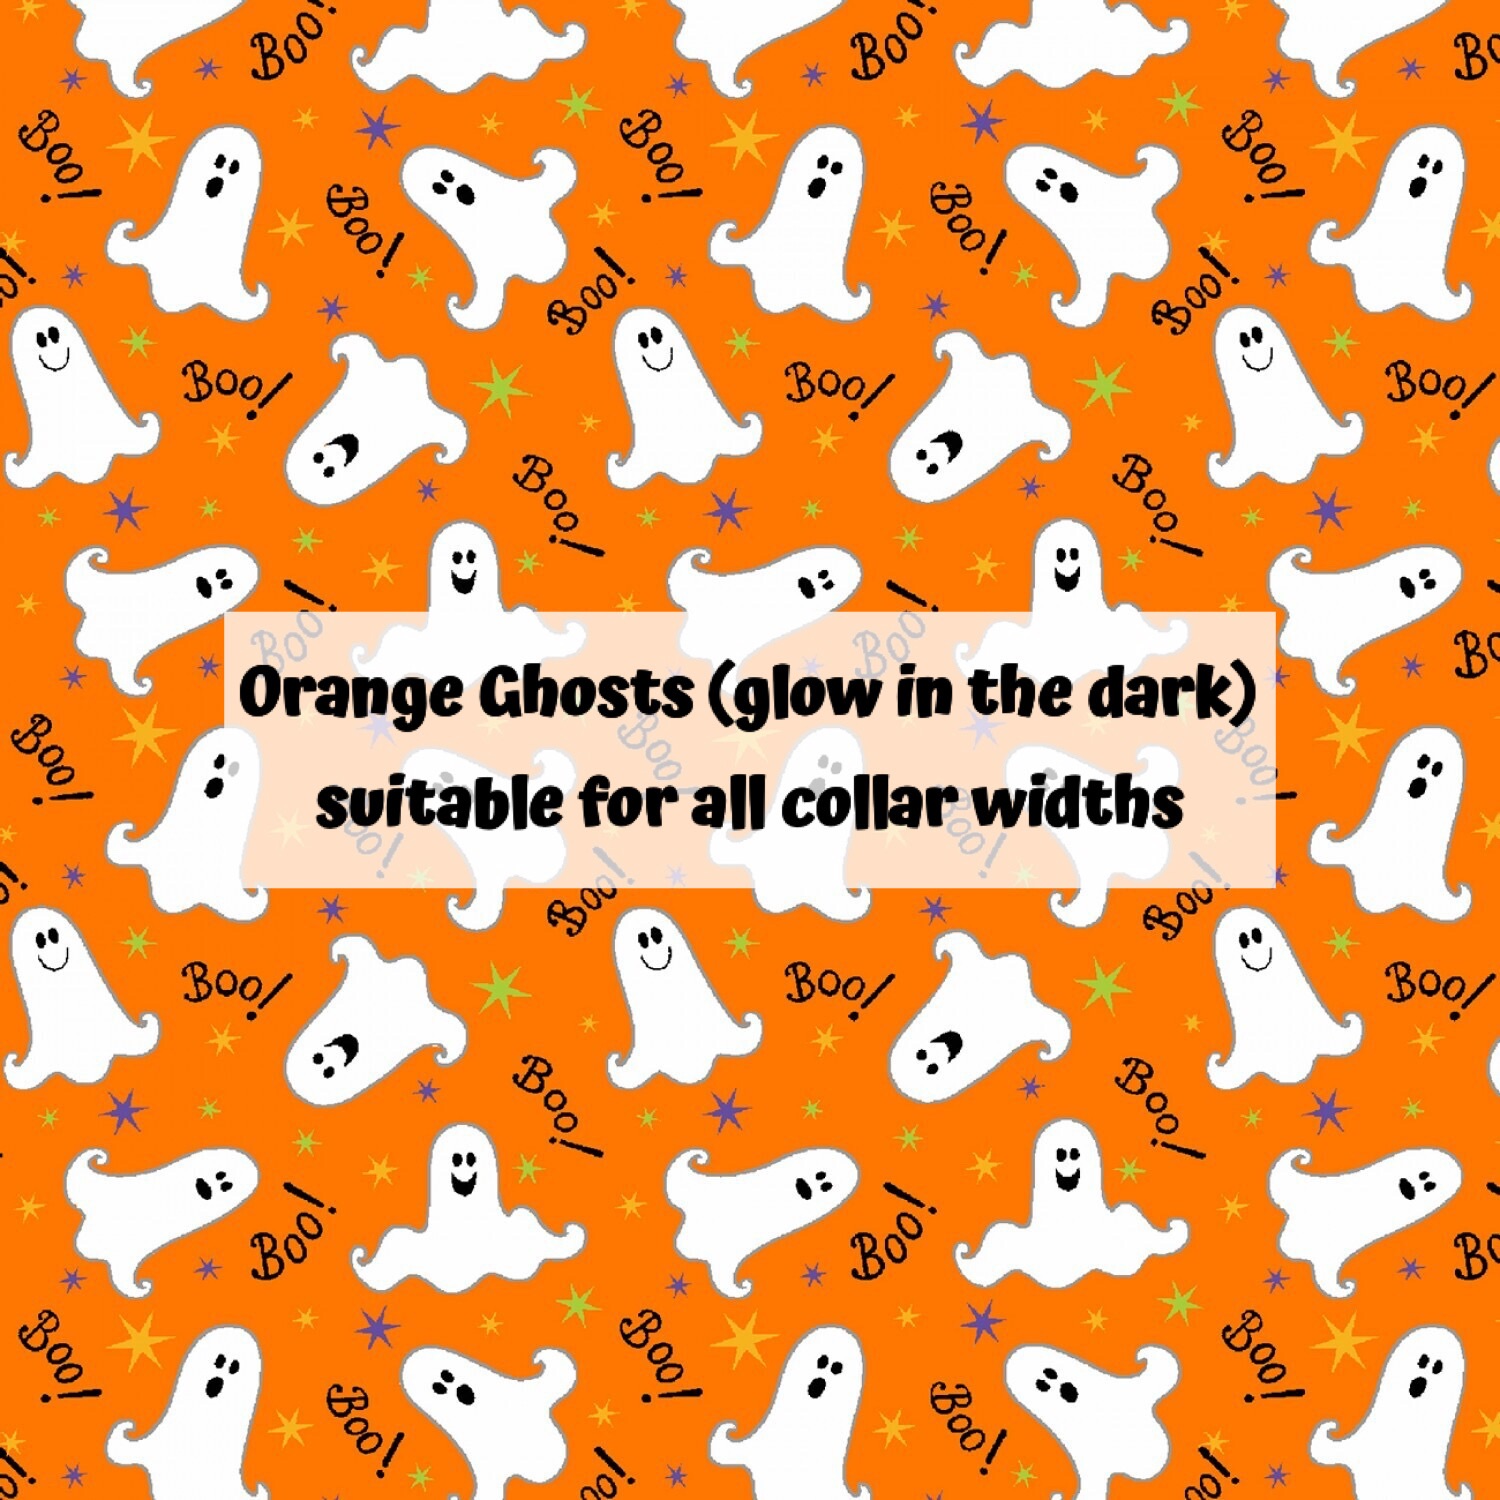 Orange Ghosts (glow in the dark)